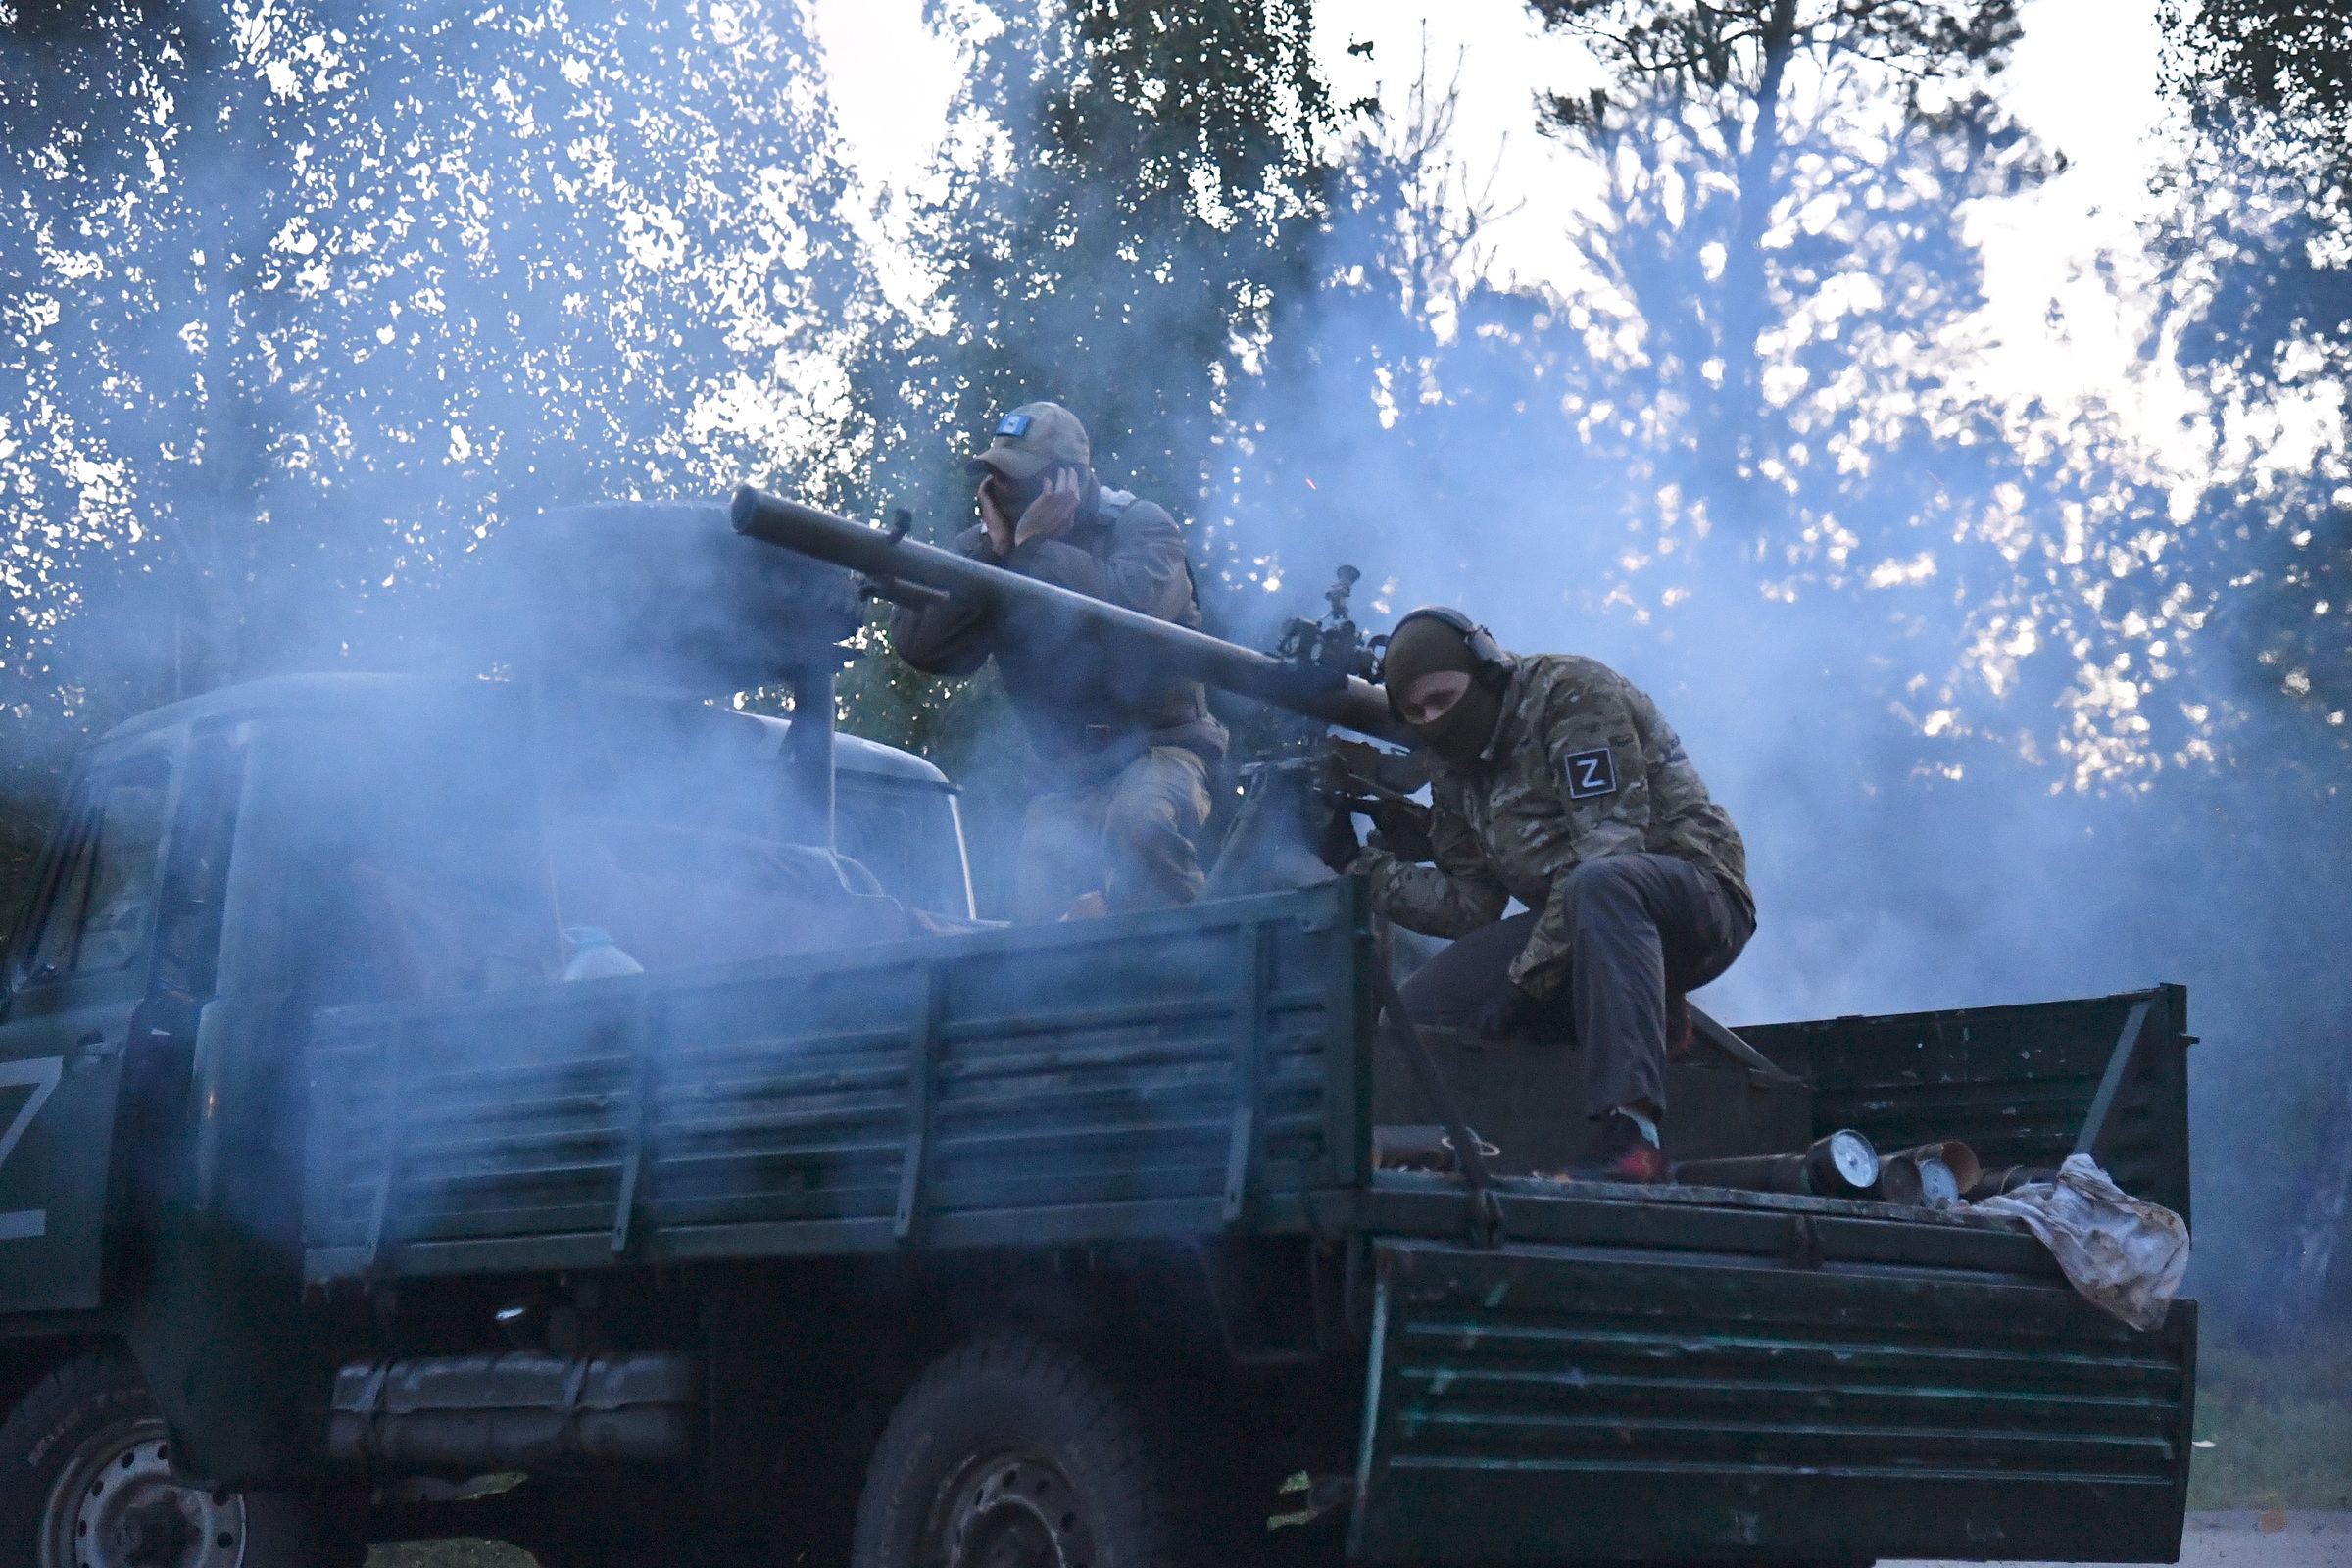 Hình ảnh công bố ngày 23/7 cho thấy đặc nhiệm Nga tác chiến gần tỉnh Kharkov, phía đông bắc Ukraine. Ảnh: Bộ Quốc phòng Nga.